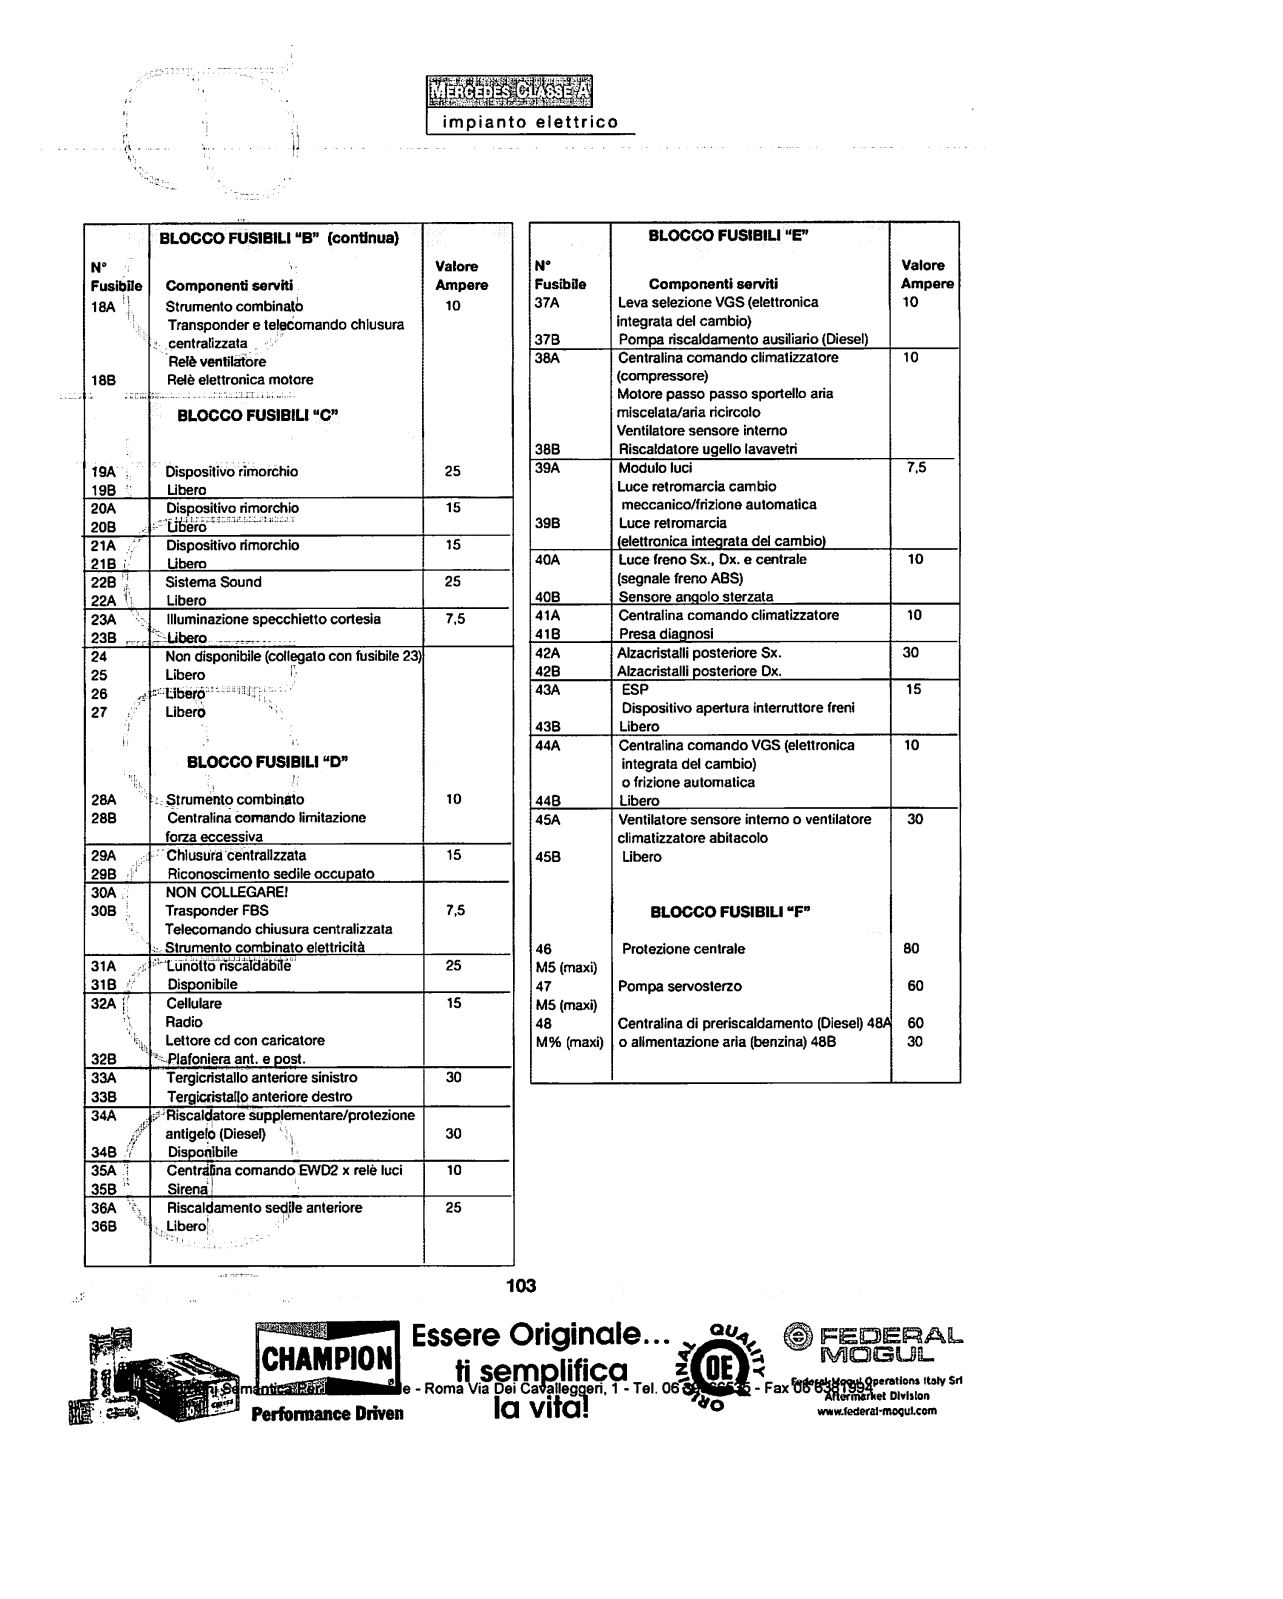 w168 - (W168): Manual técnico - tudo sobre - 1997 a 2004 - italiano 2hr0djb